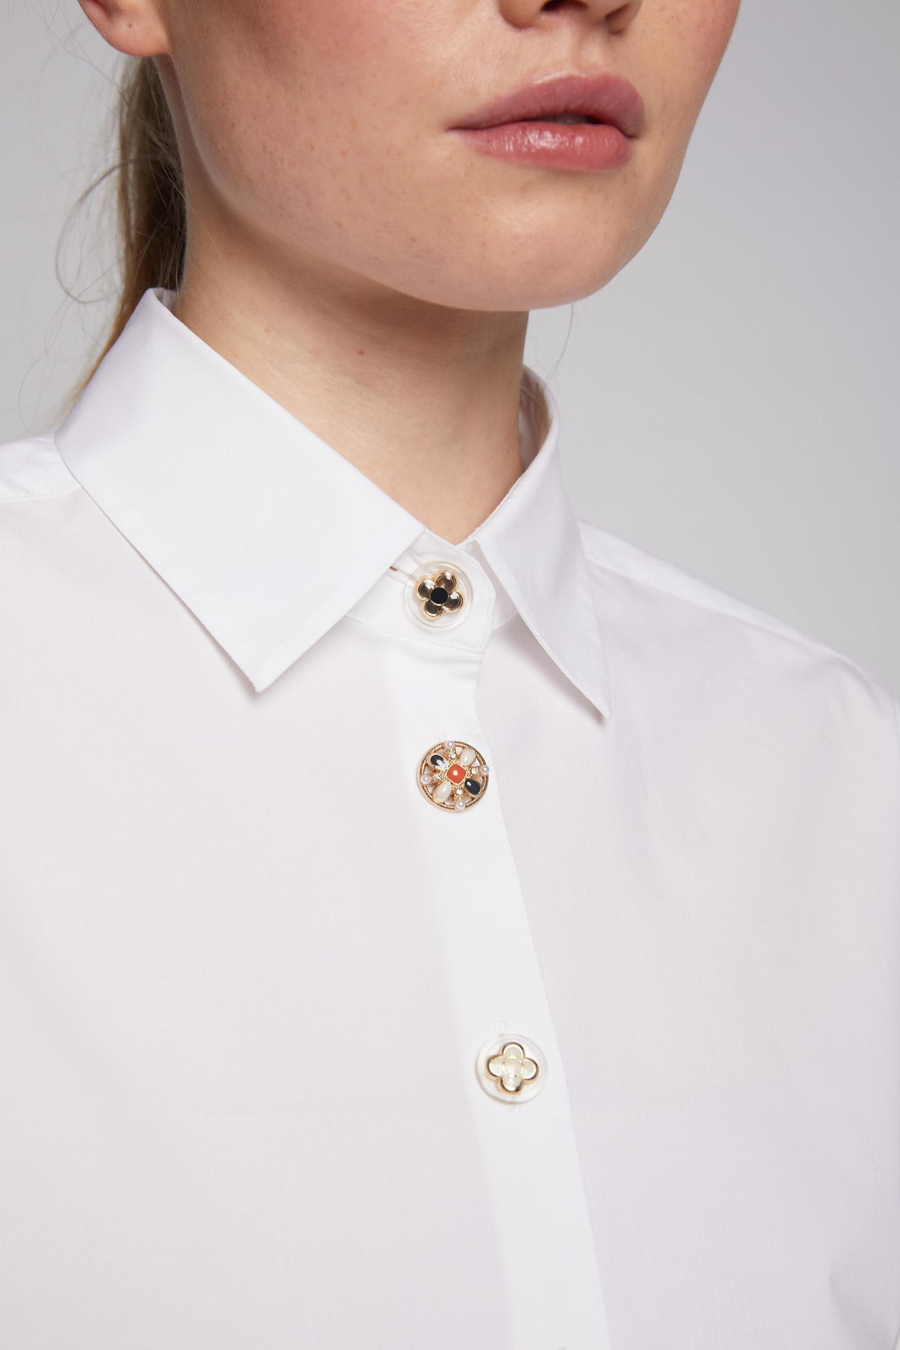 Vilagallo Irina White Poplin Sparkle Button Shirt